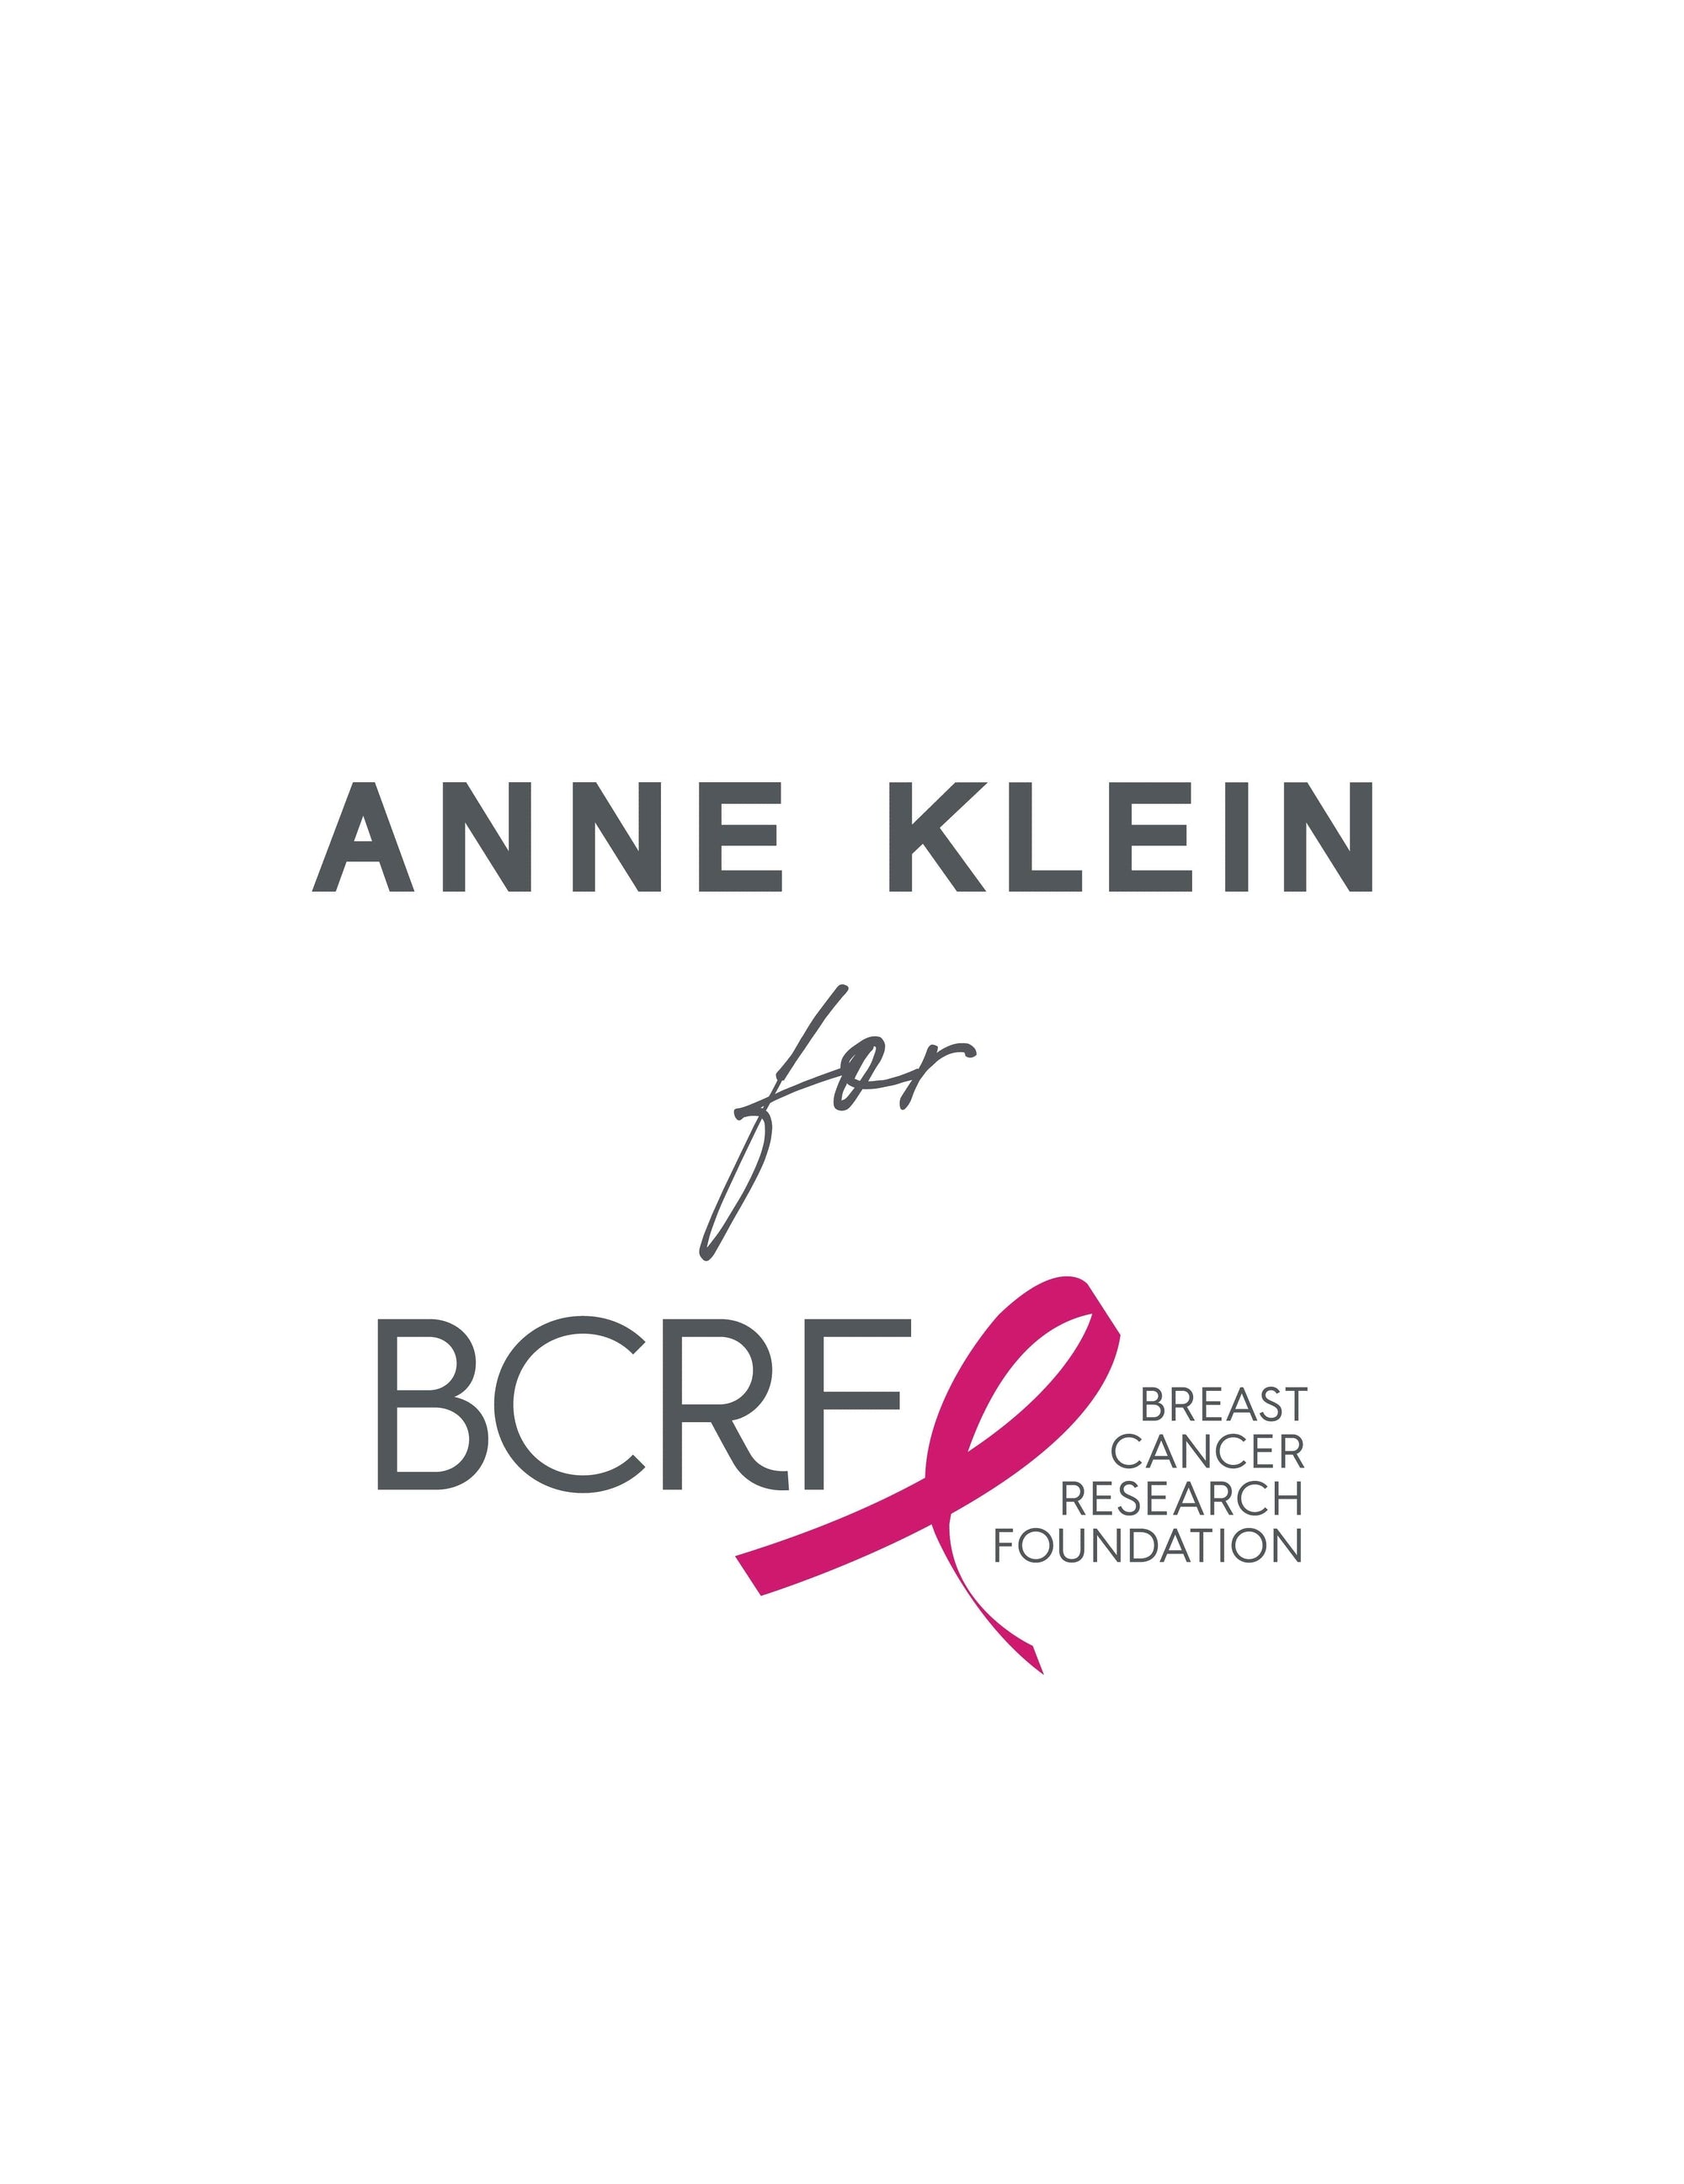 Anne Klein  Support BCRF with Anne Klein